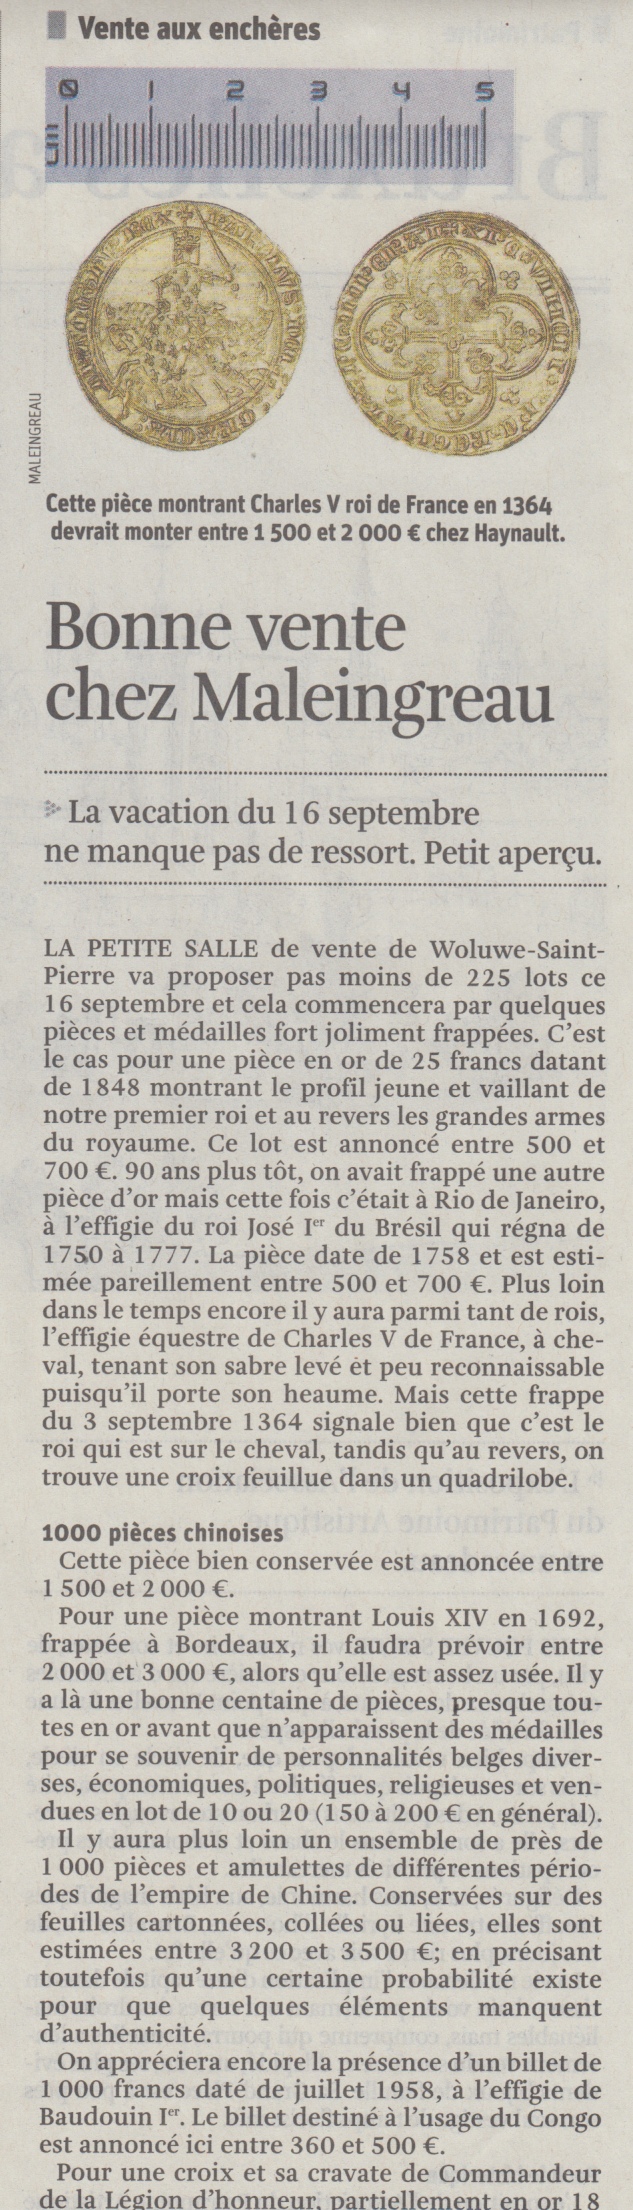 Bonne vente chez Maleingreau - La Libre Belgique - Wednesday, September 6th 2017